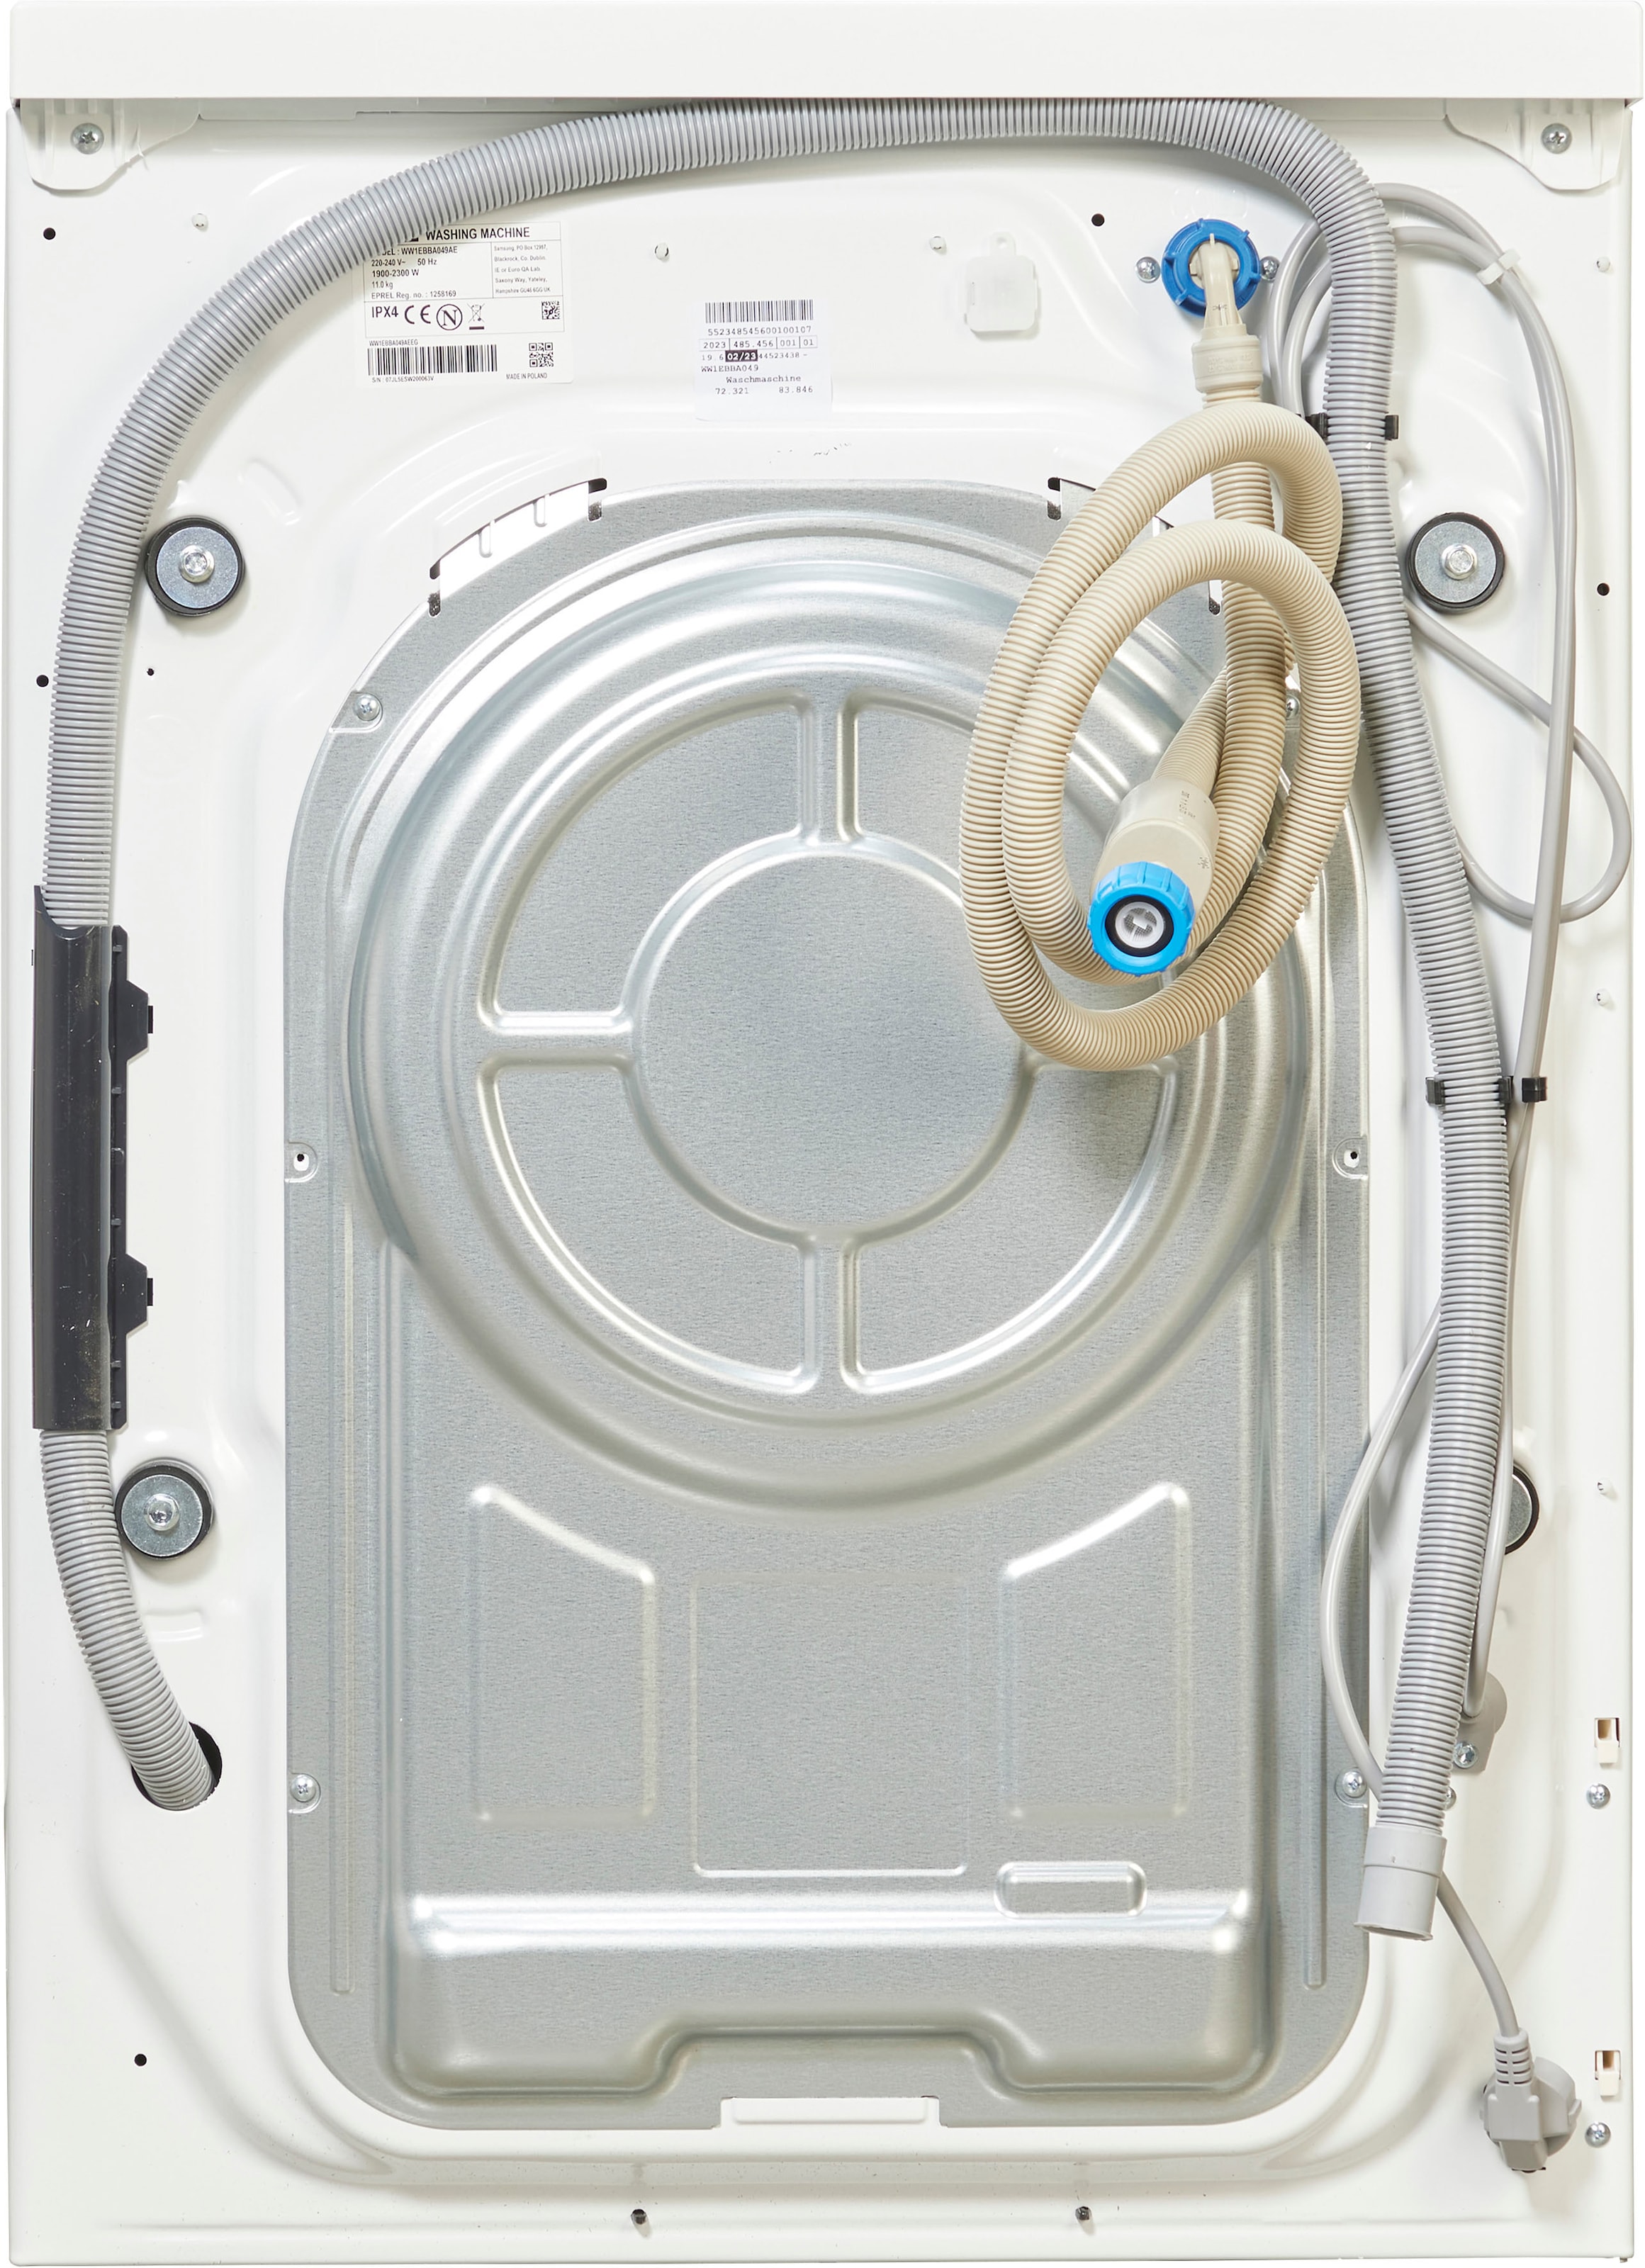 Samsung Waschmaschine »WW1EBBA049AE«, WW1EBBA049AE, 11 kg, 1400 U/min  online bestellen